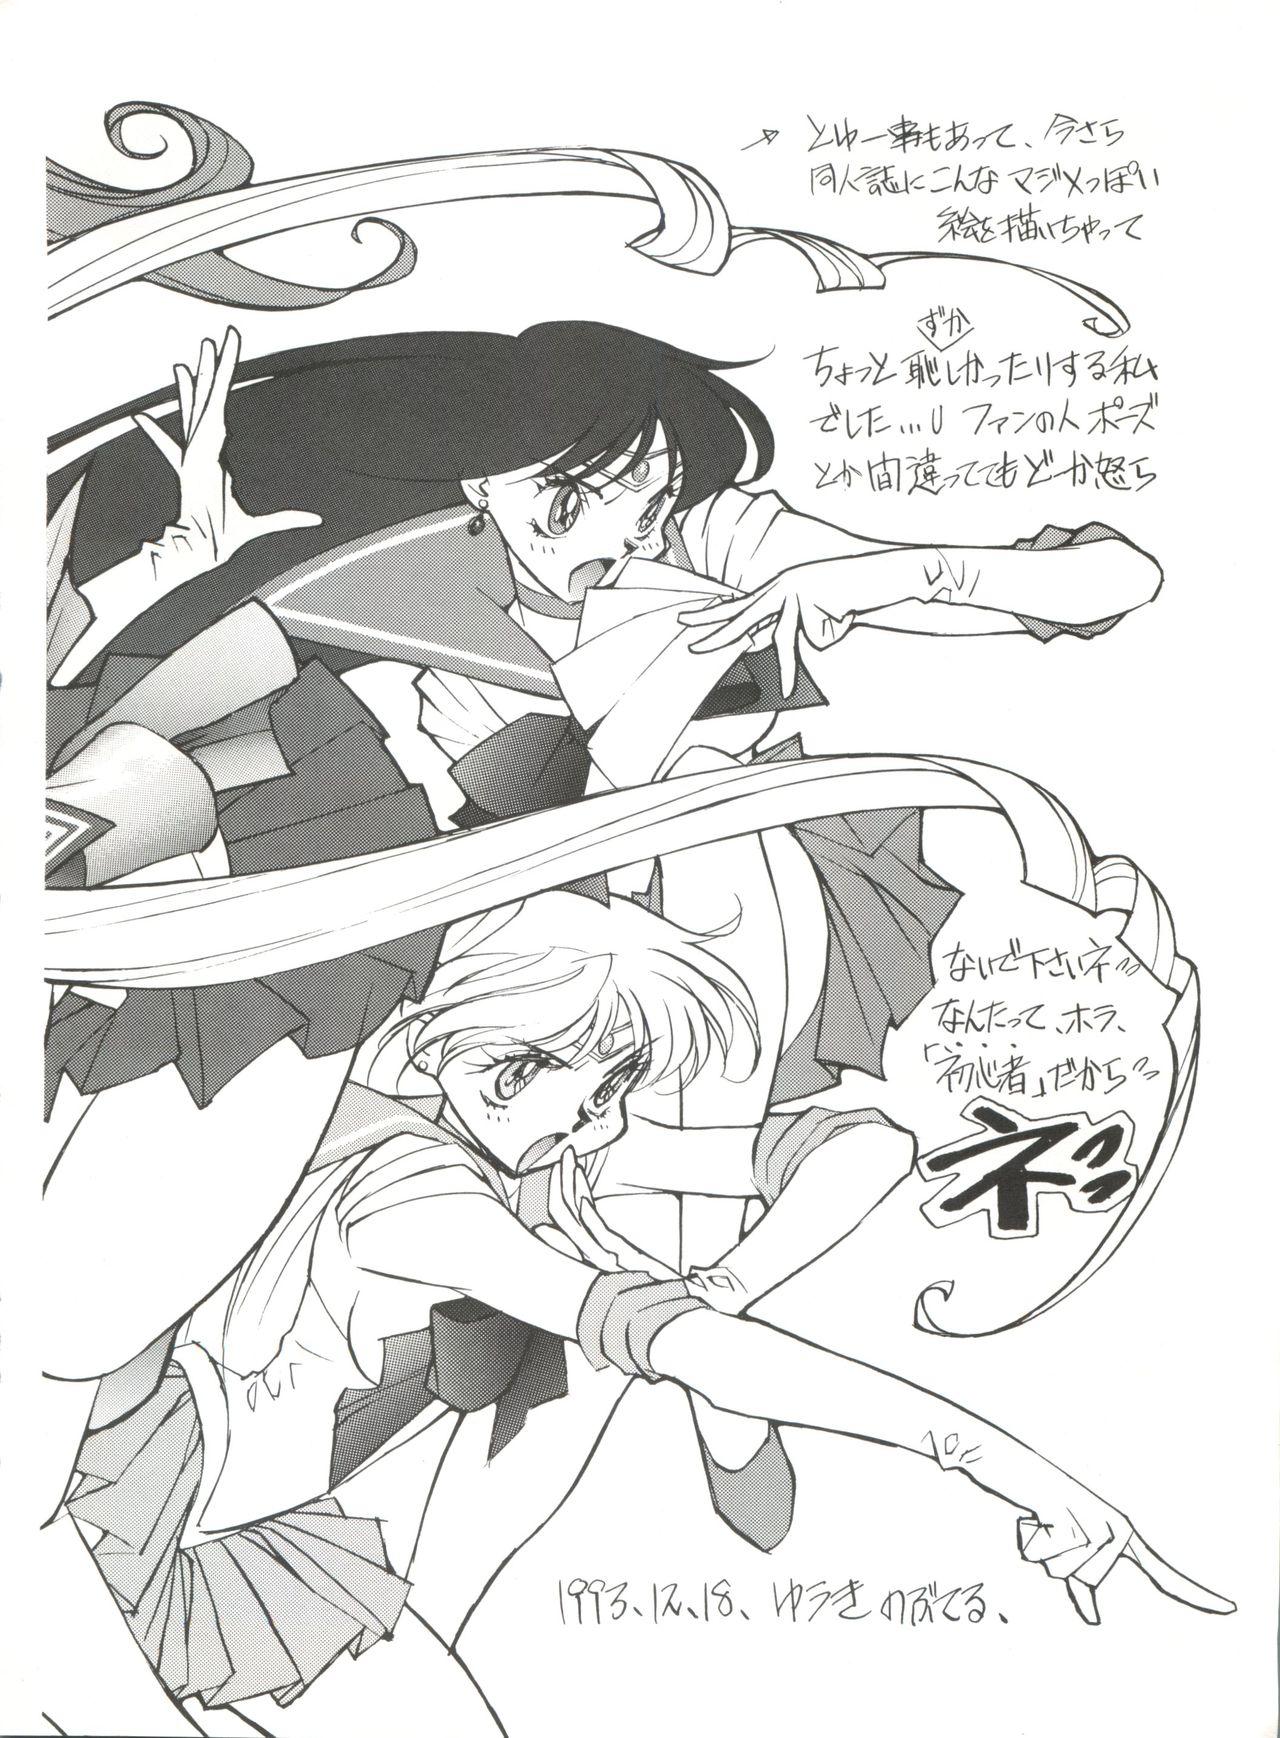 Adolescente Gekkou 4 - Sailor moon Caught - Page 7